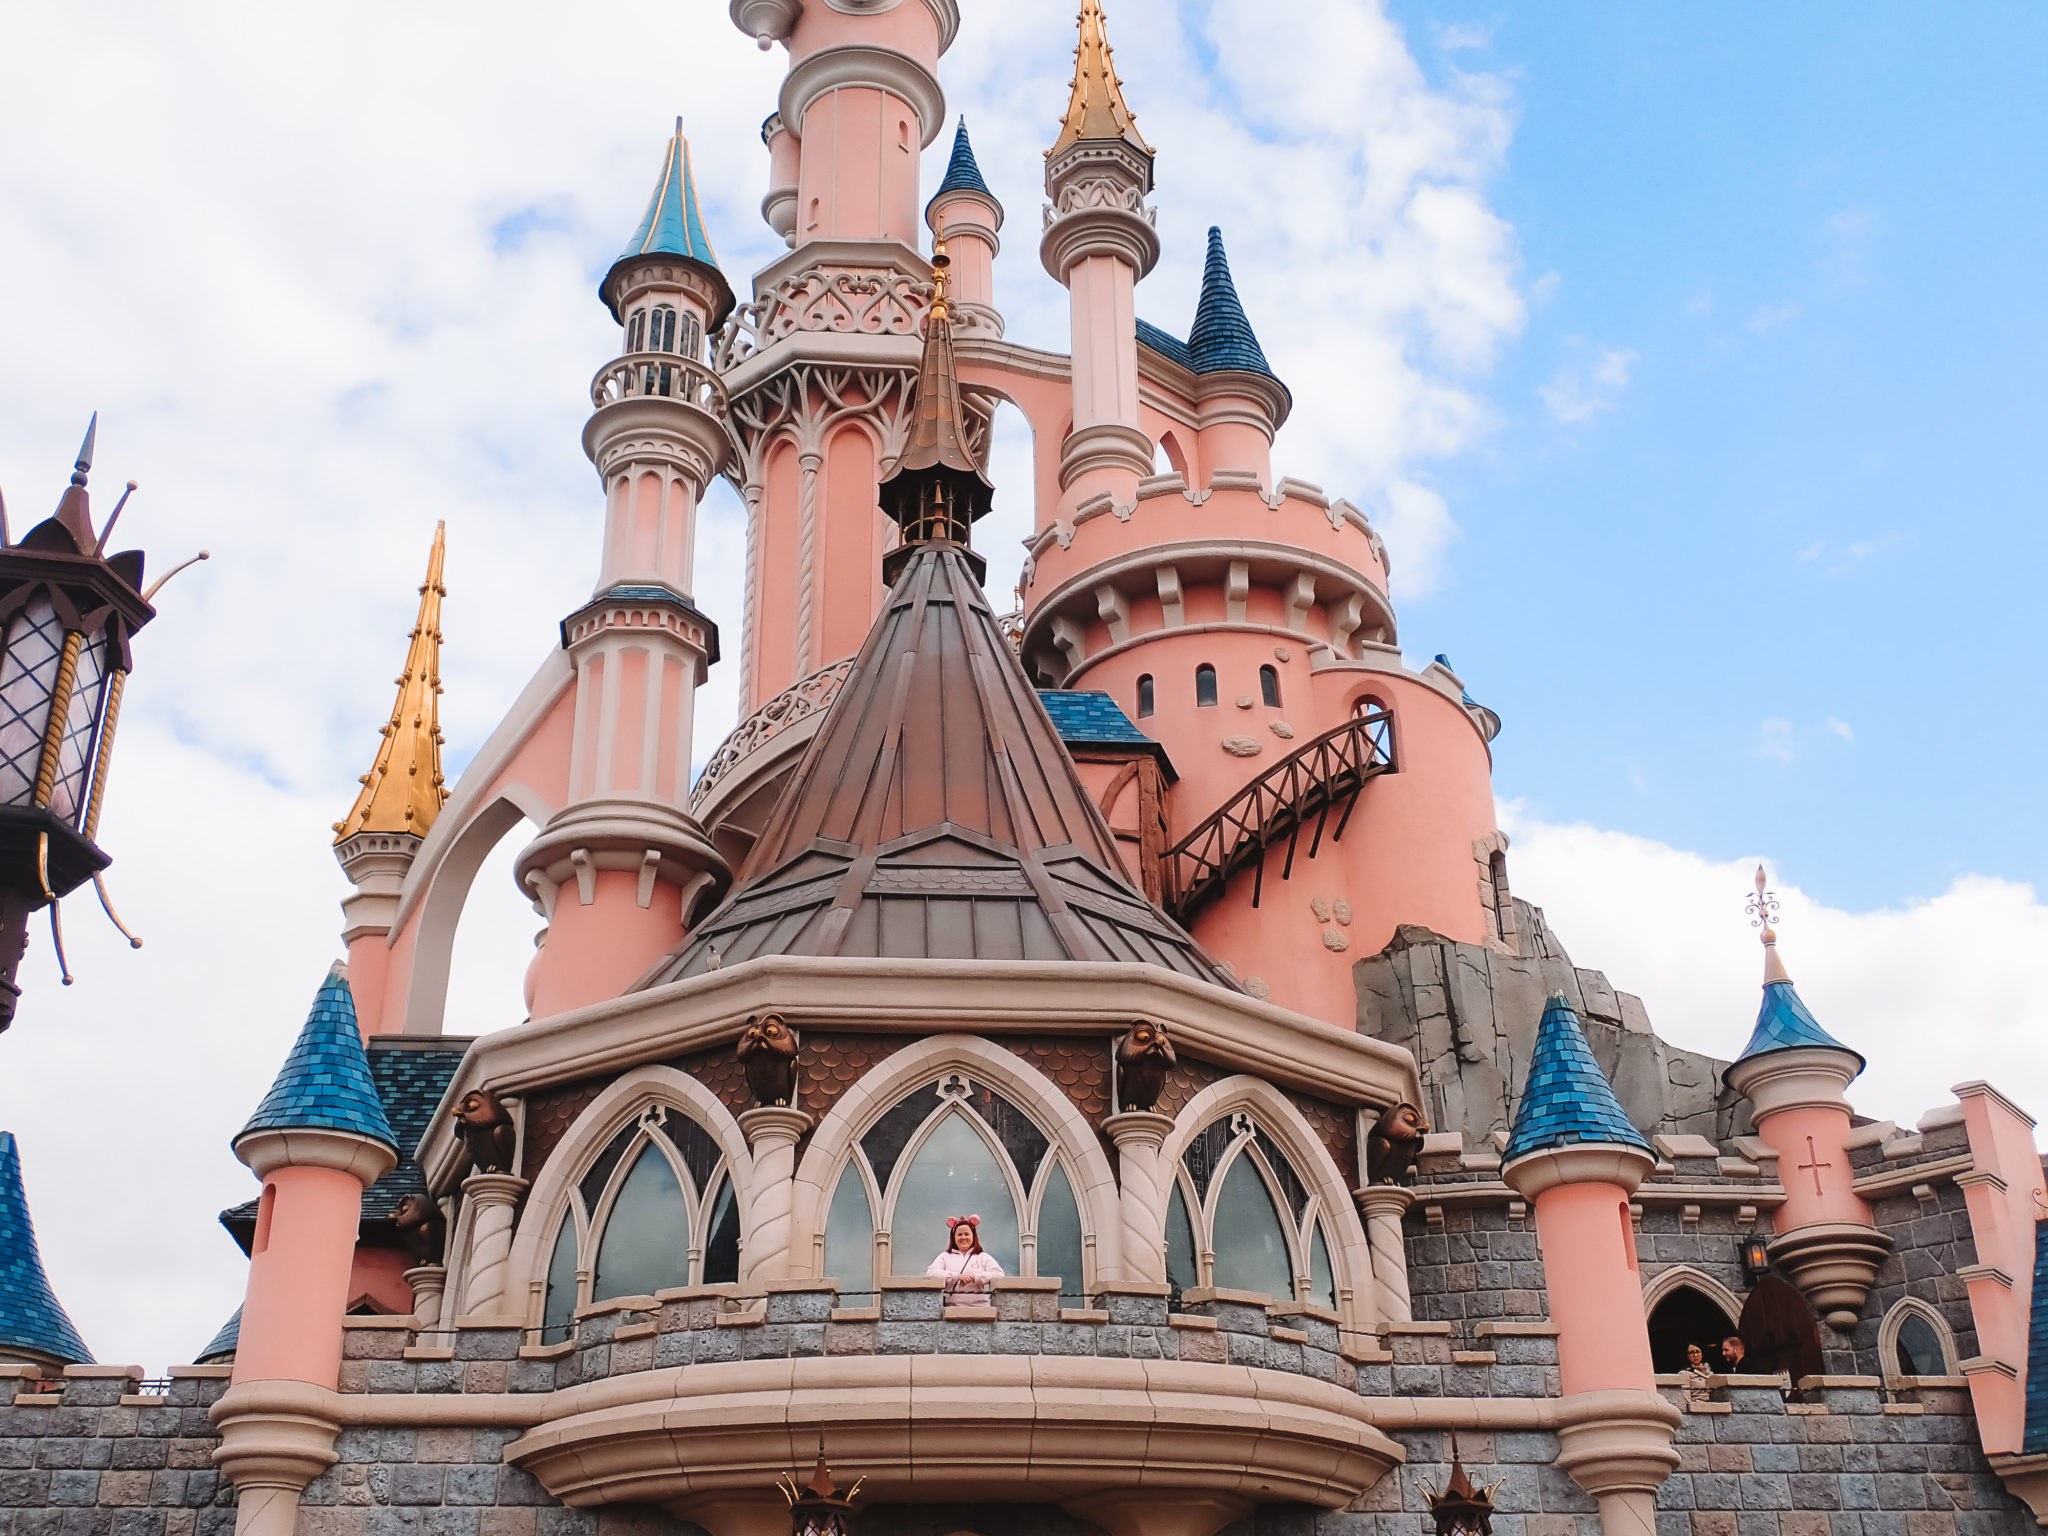 Disneyland Paris Travel Guide - Annie Fairfax